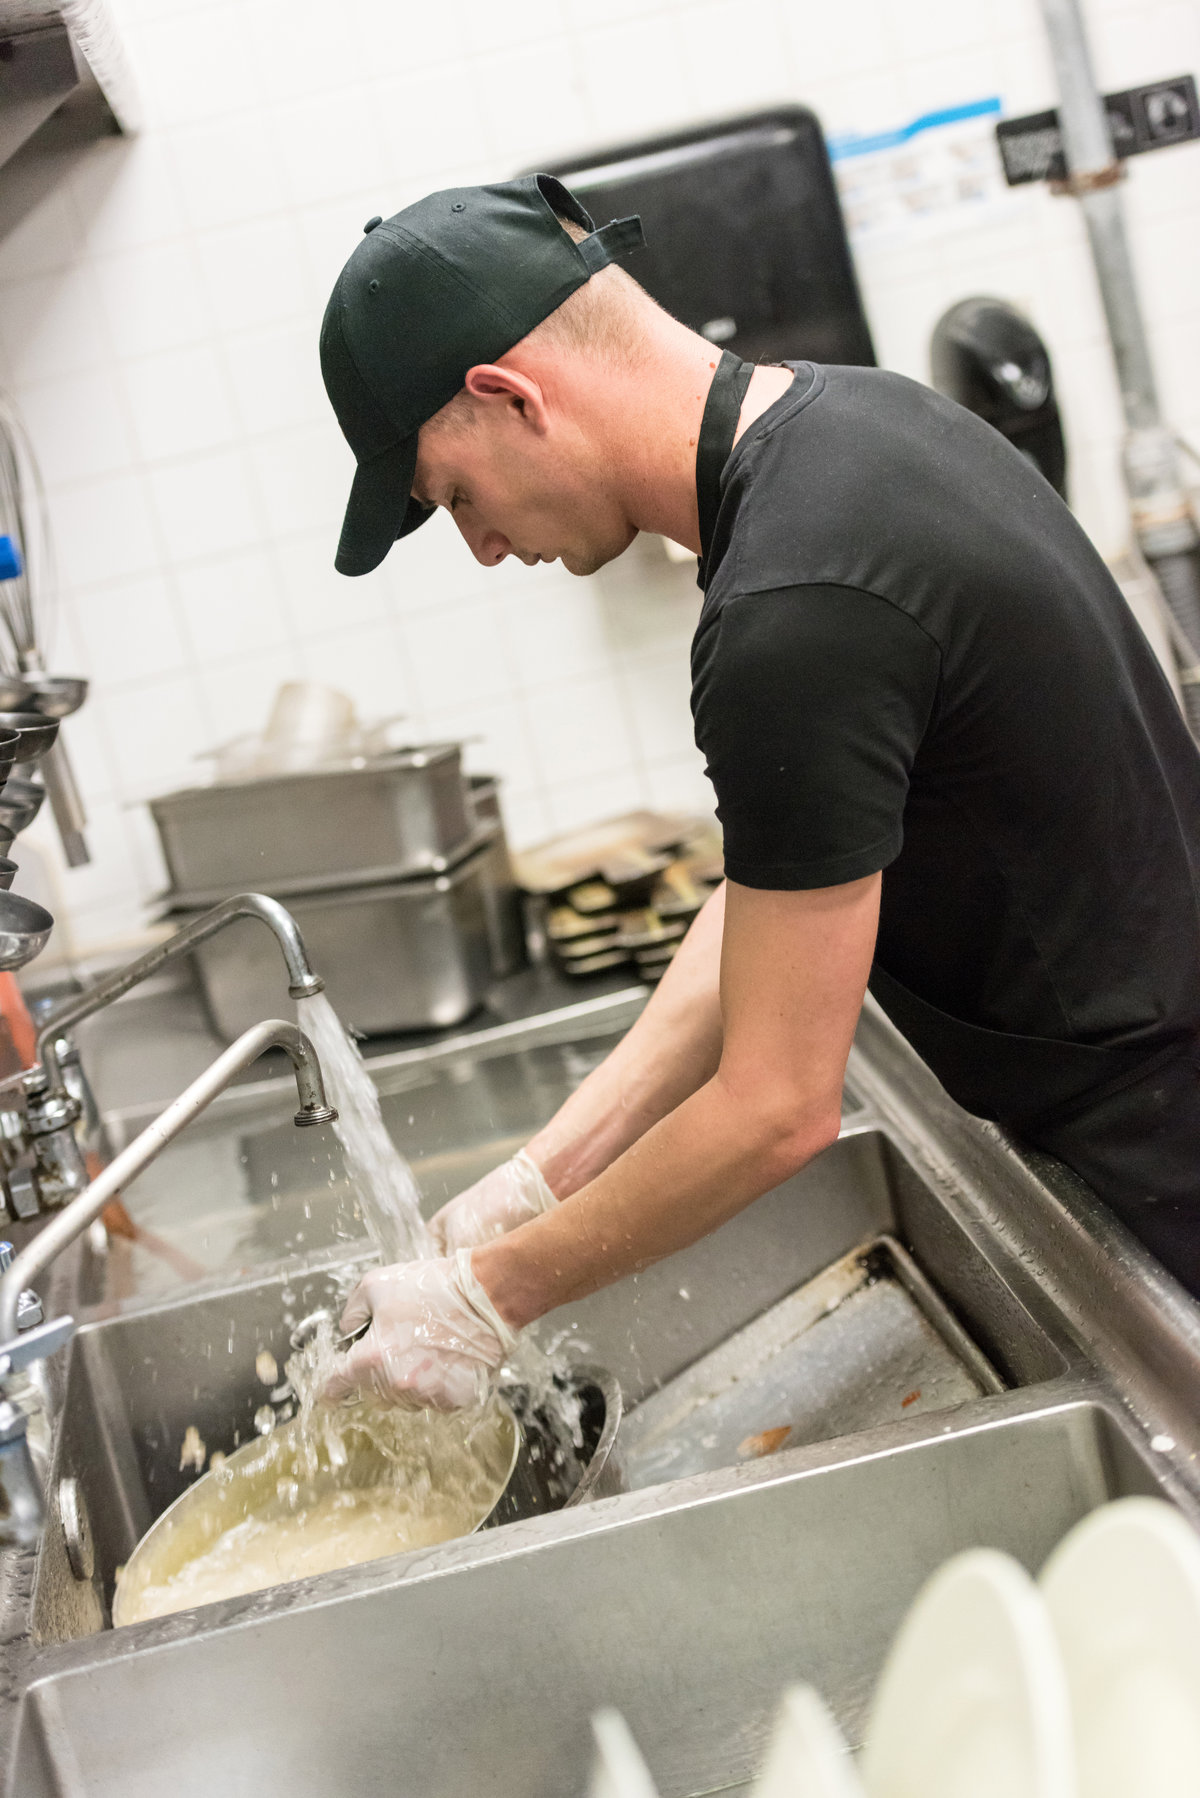 Restaurant worker washing dishes